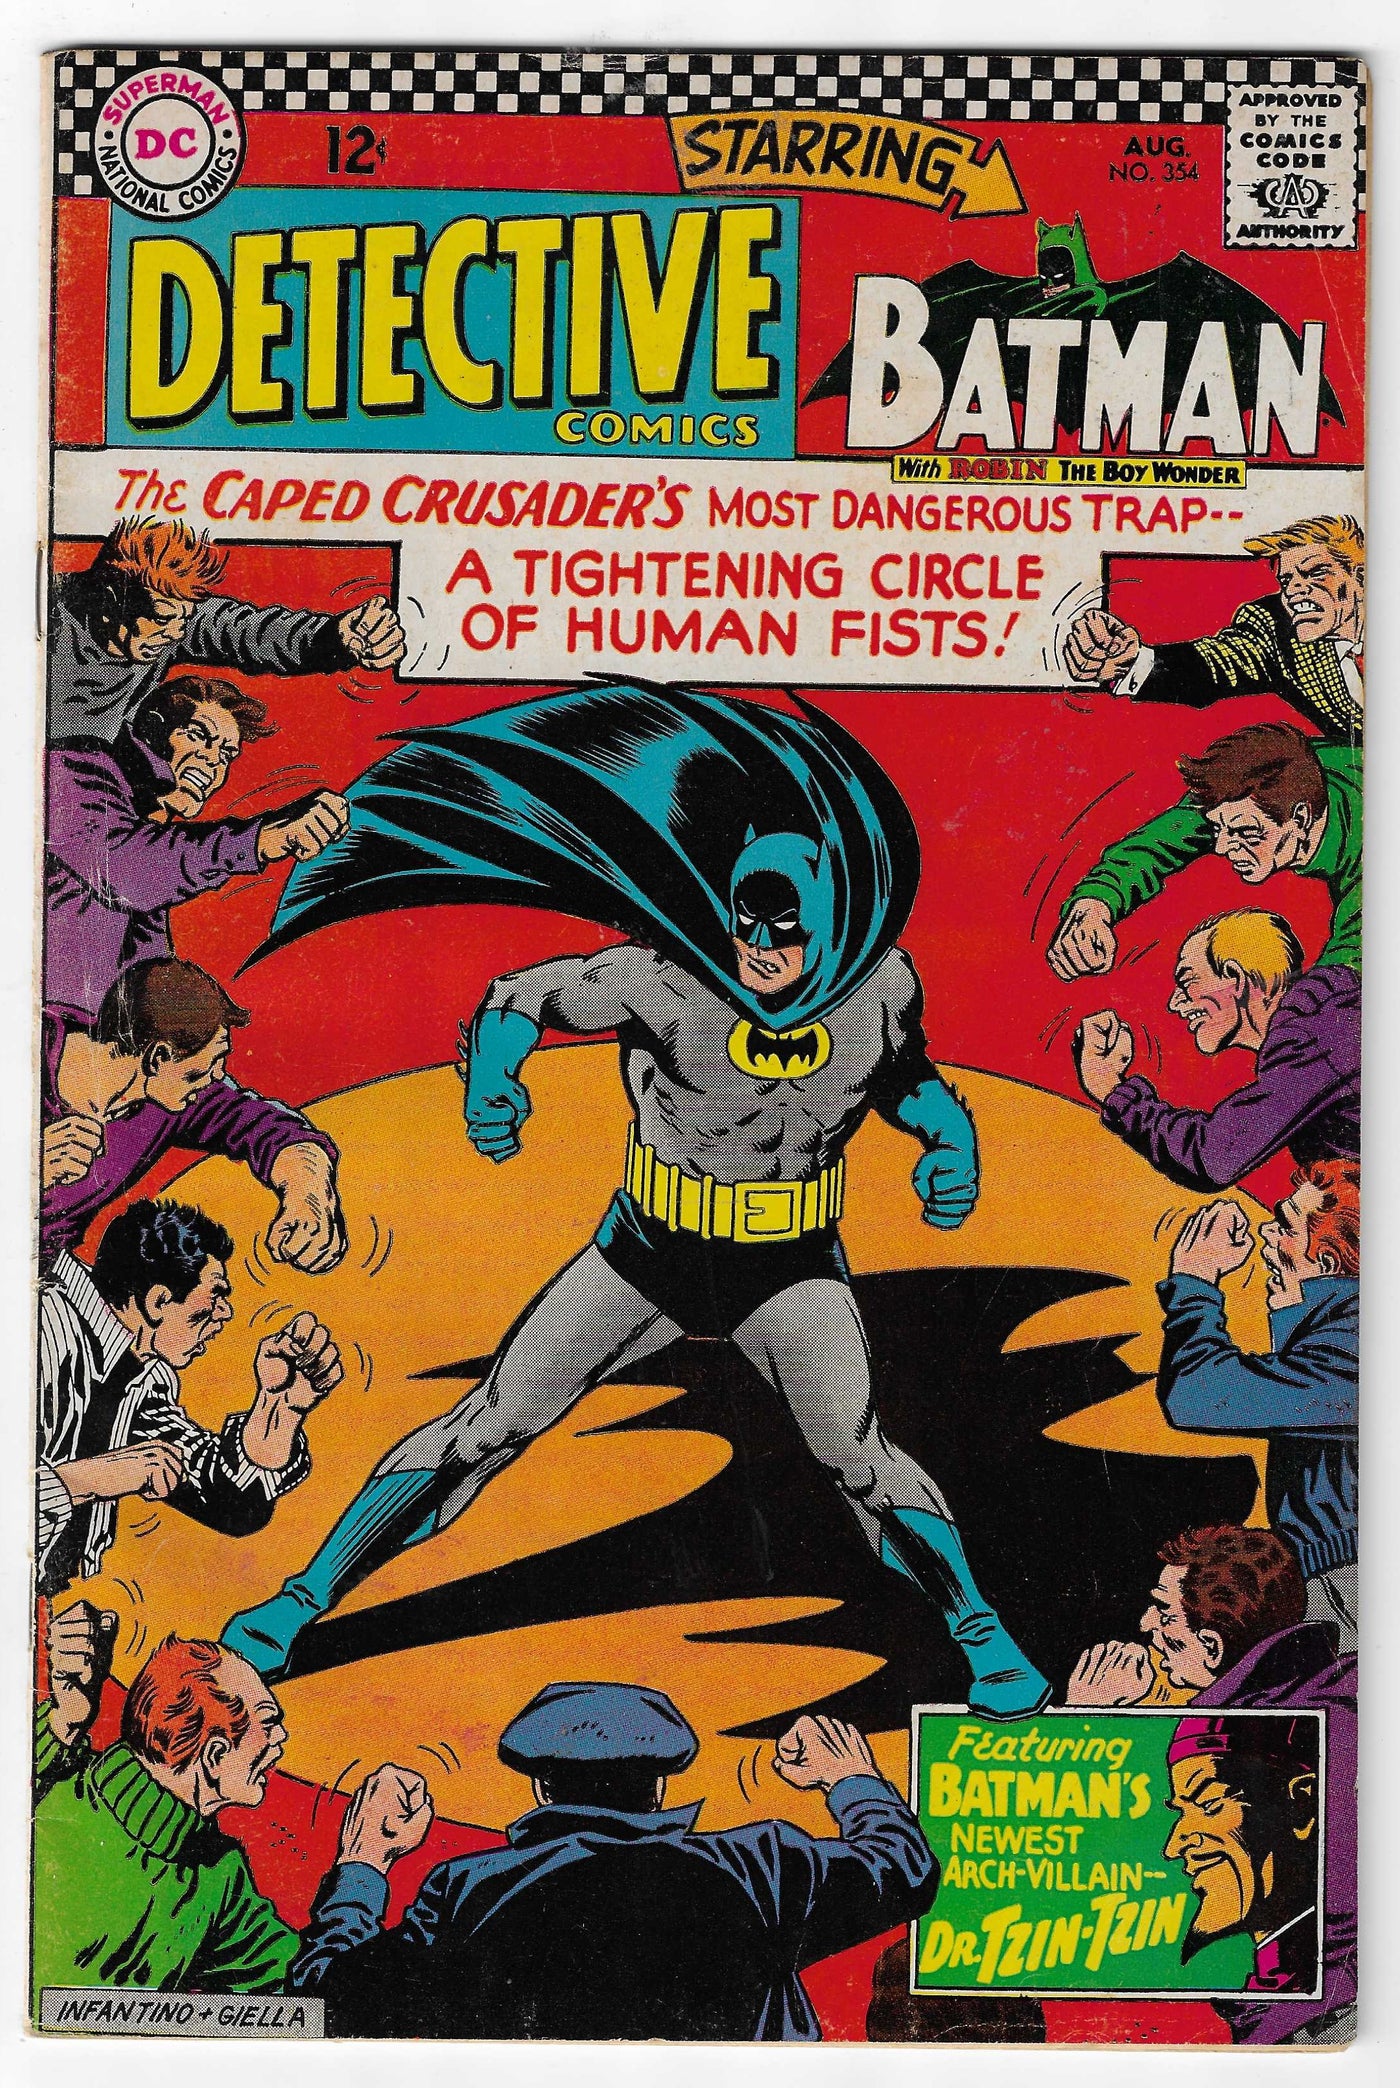 Detective Comics (Volume 1) #354